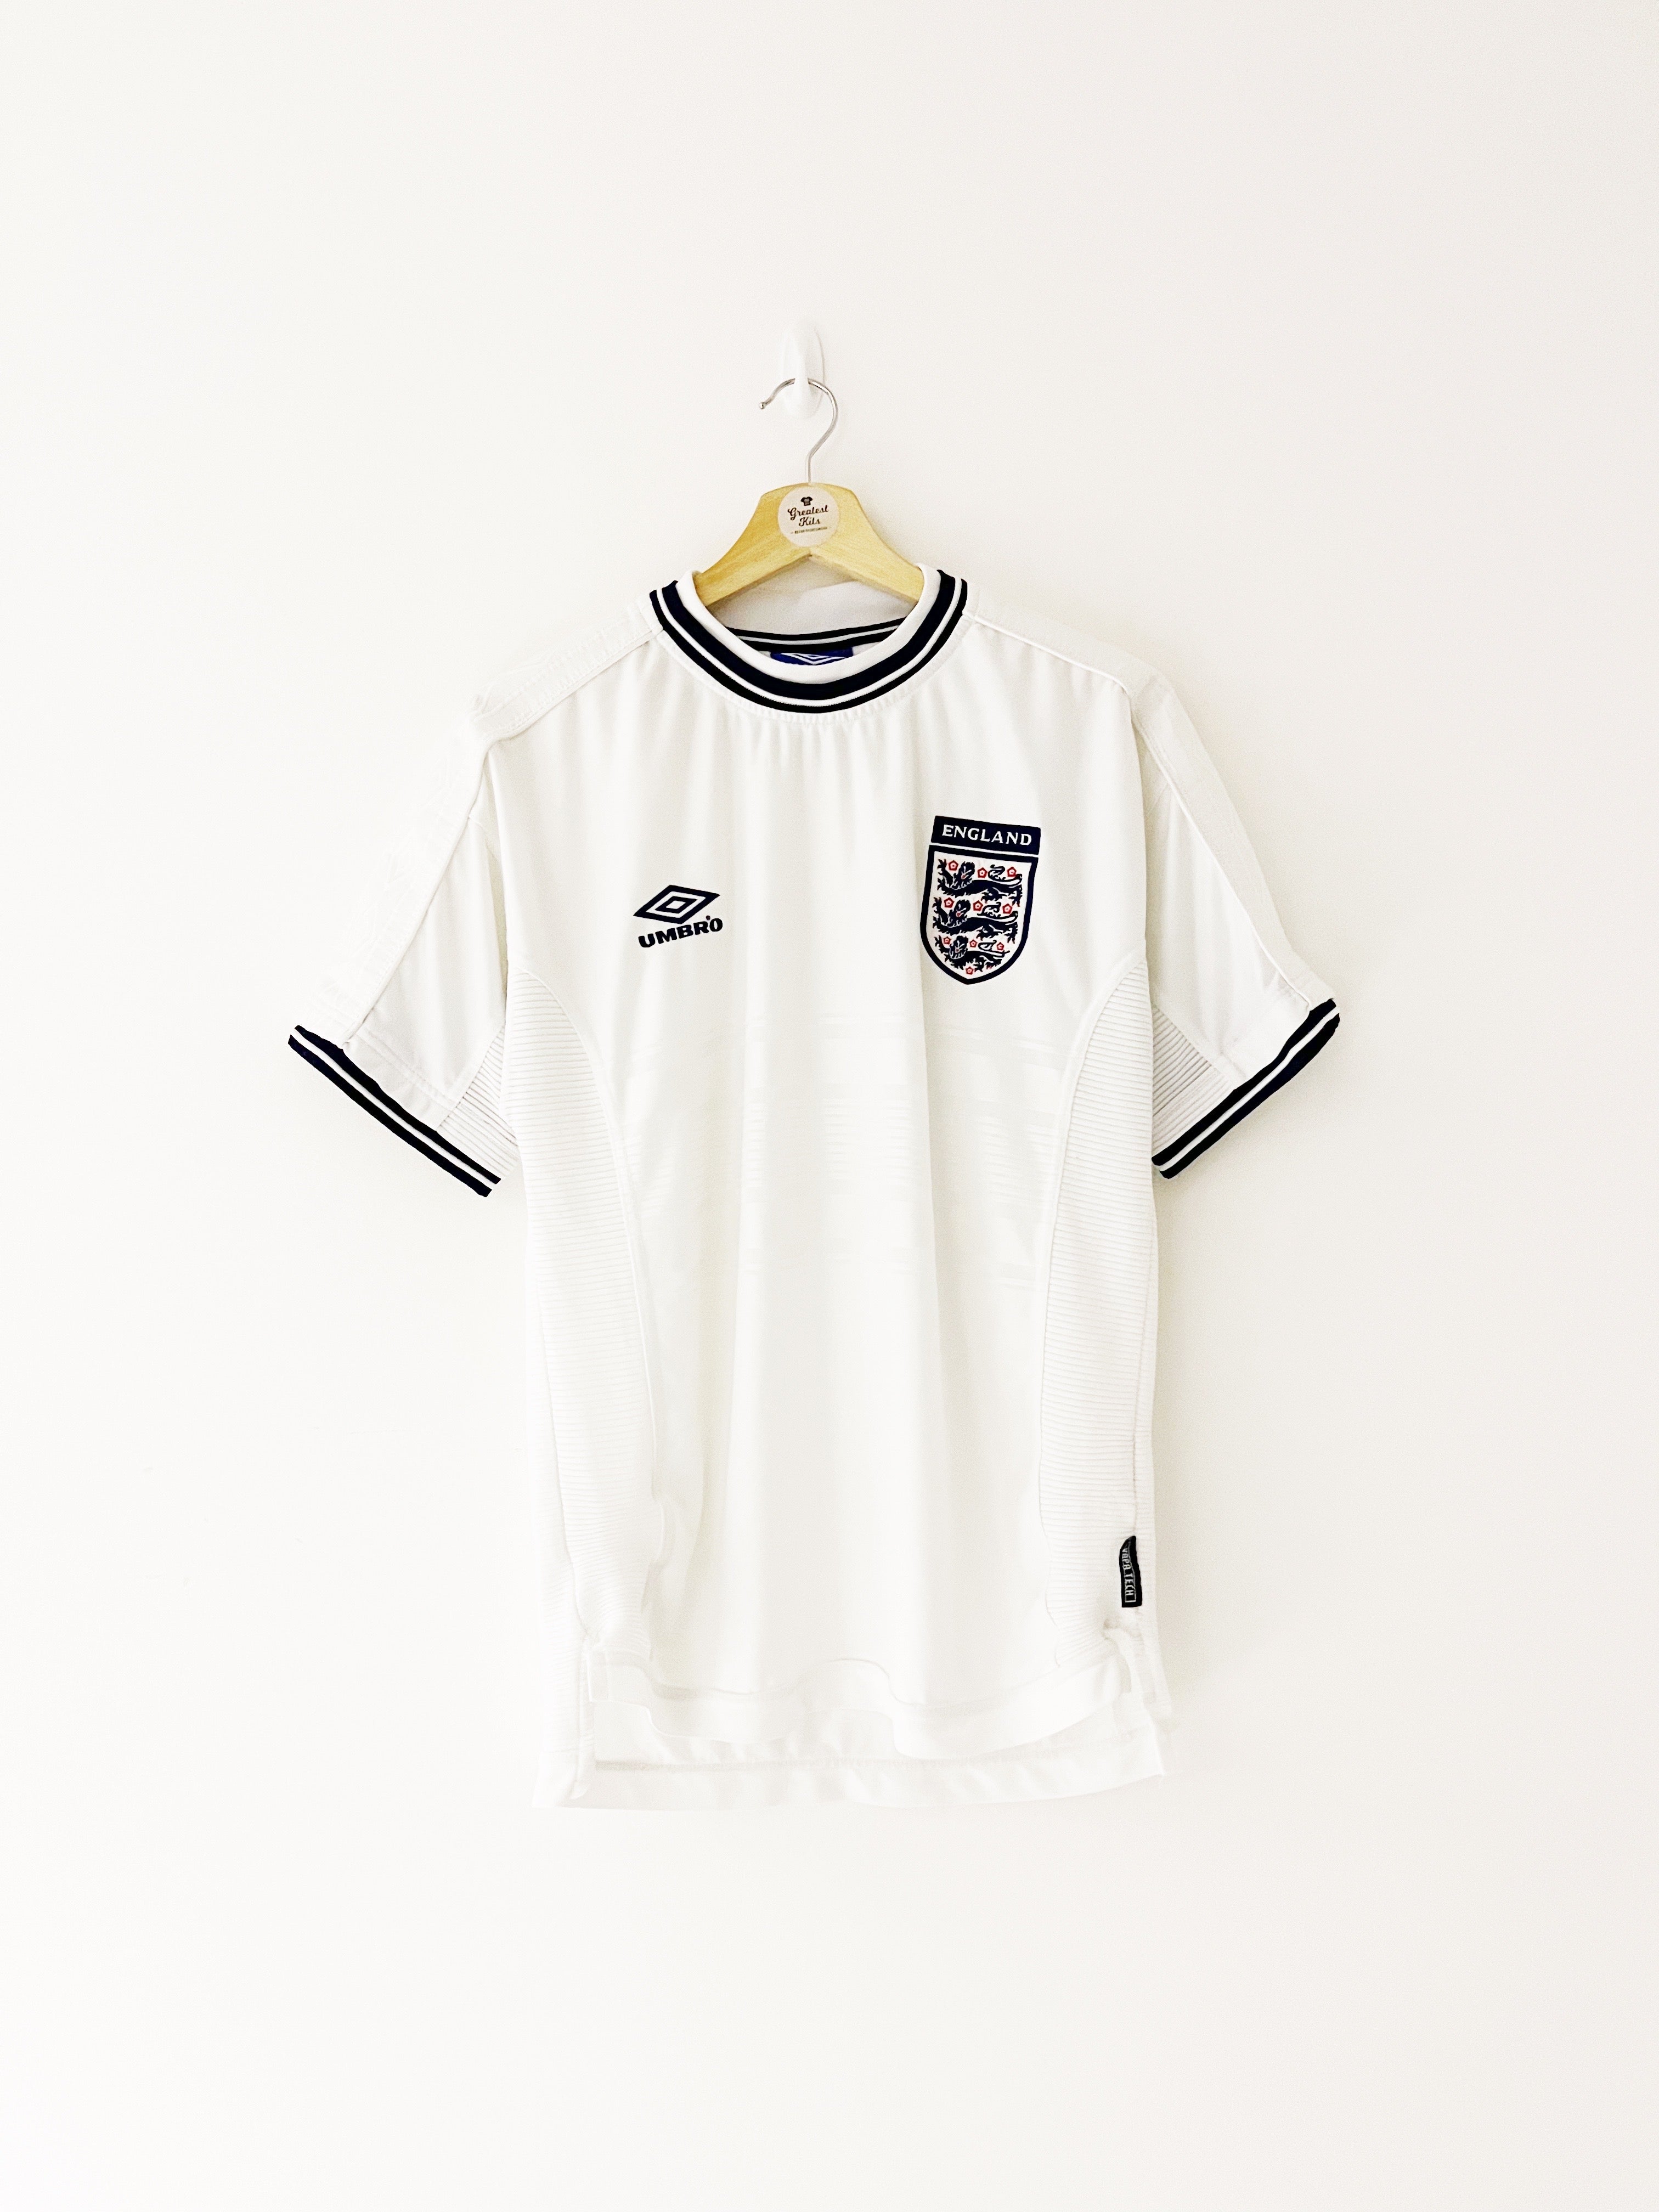 1999/01 England Home Shirt (M) 9/10